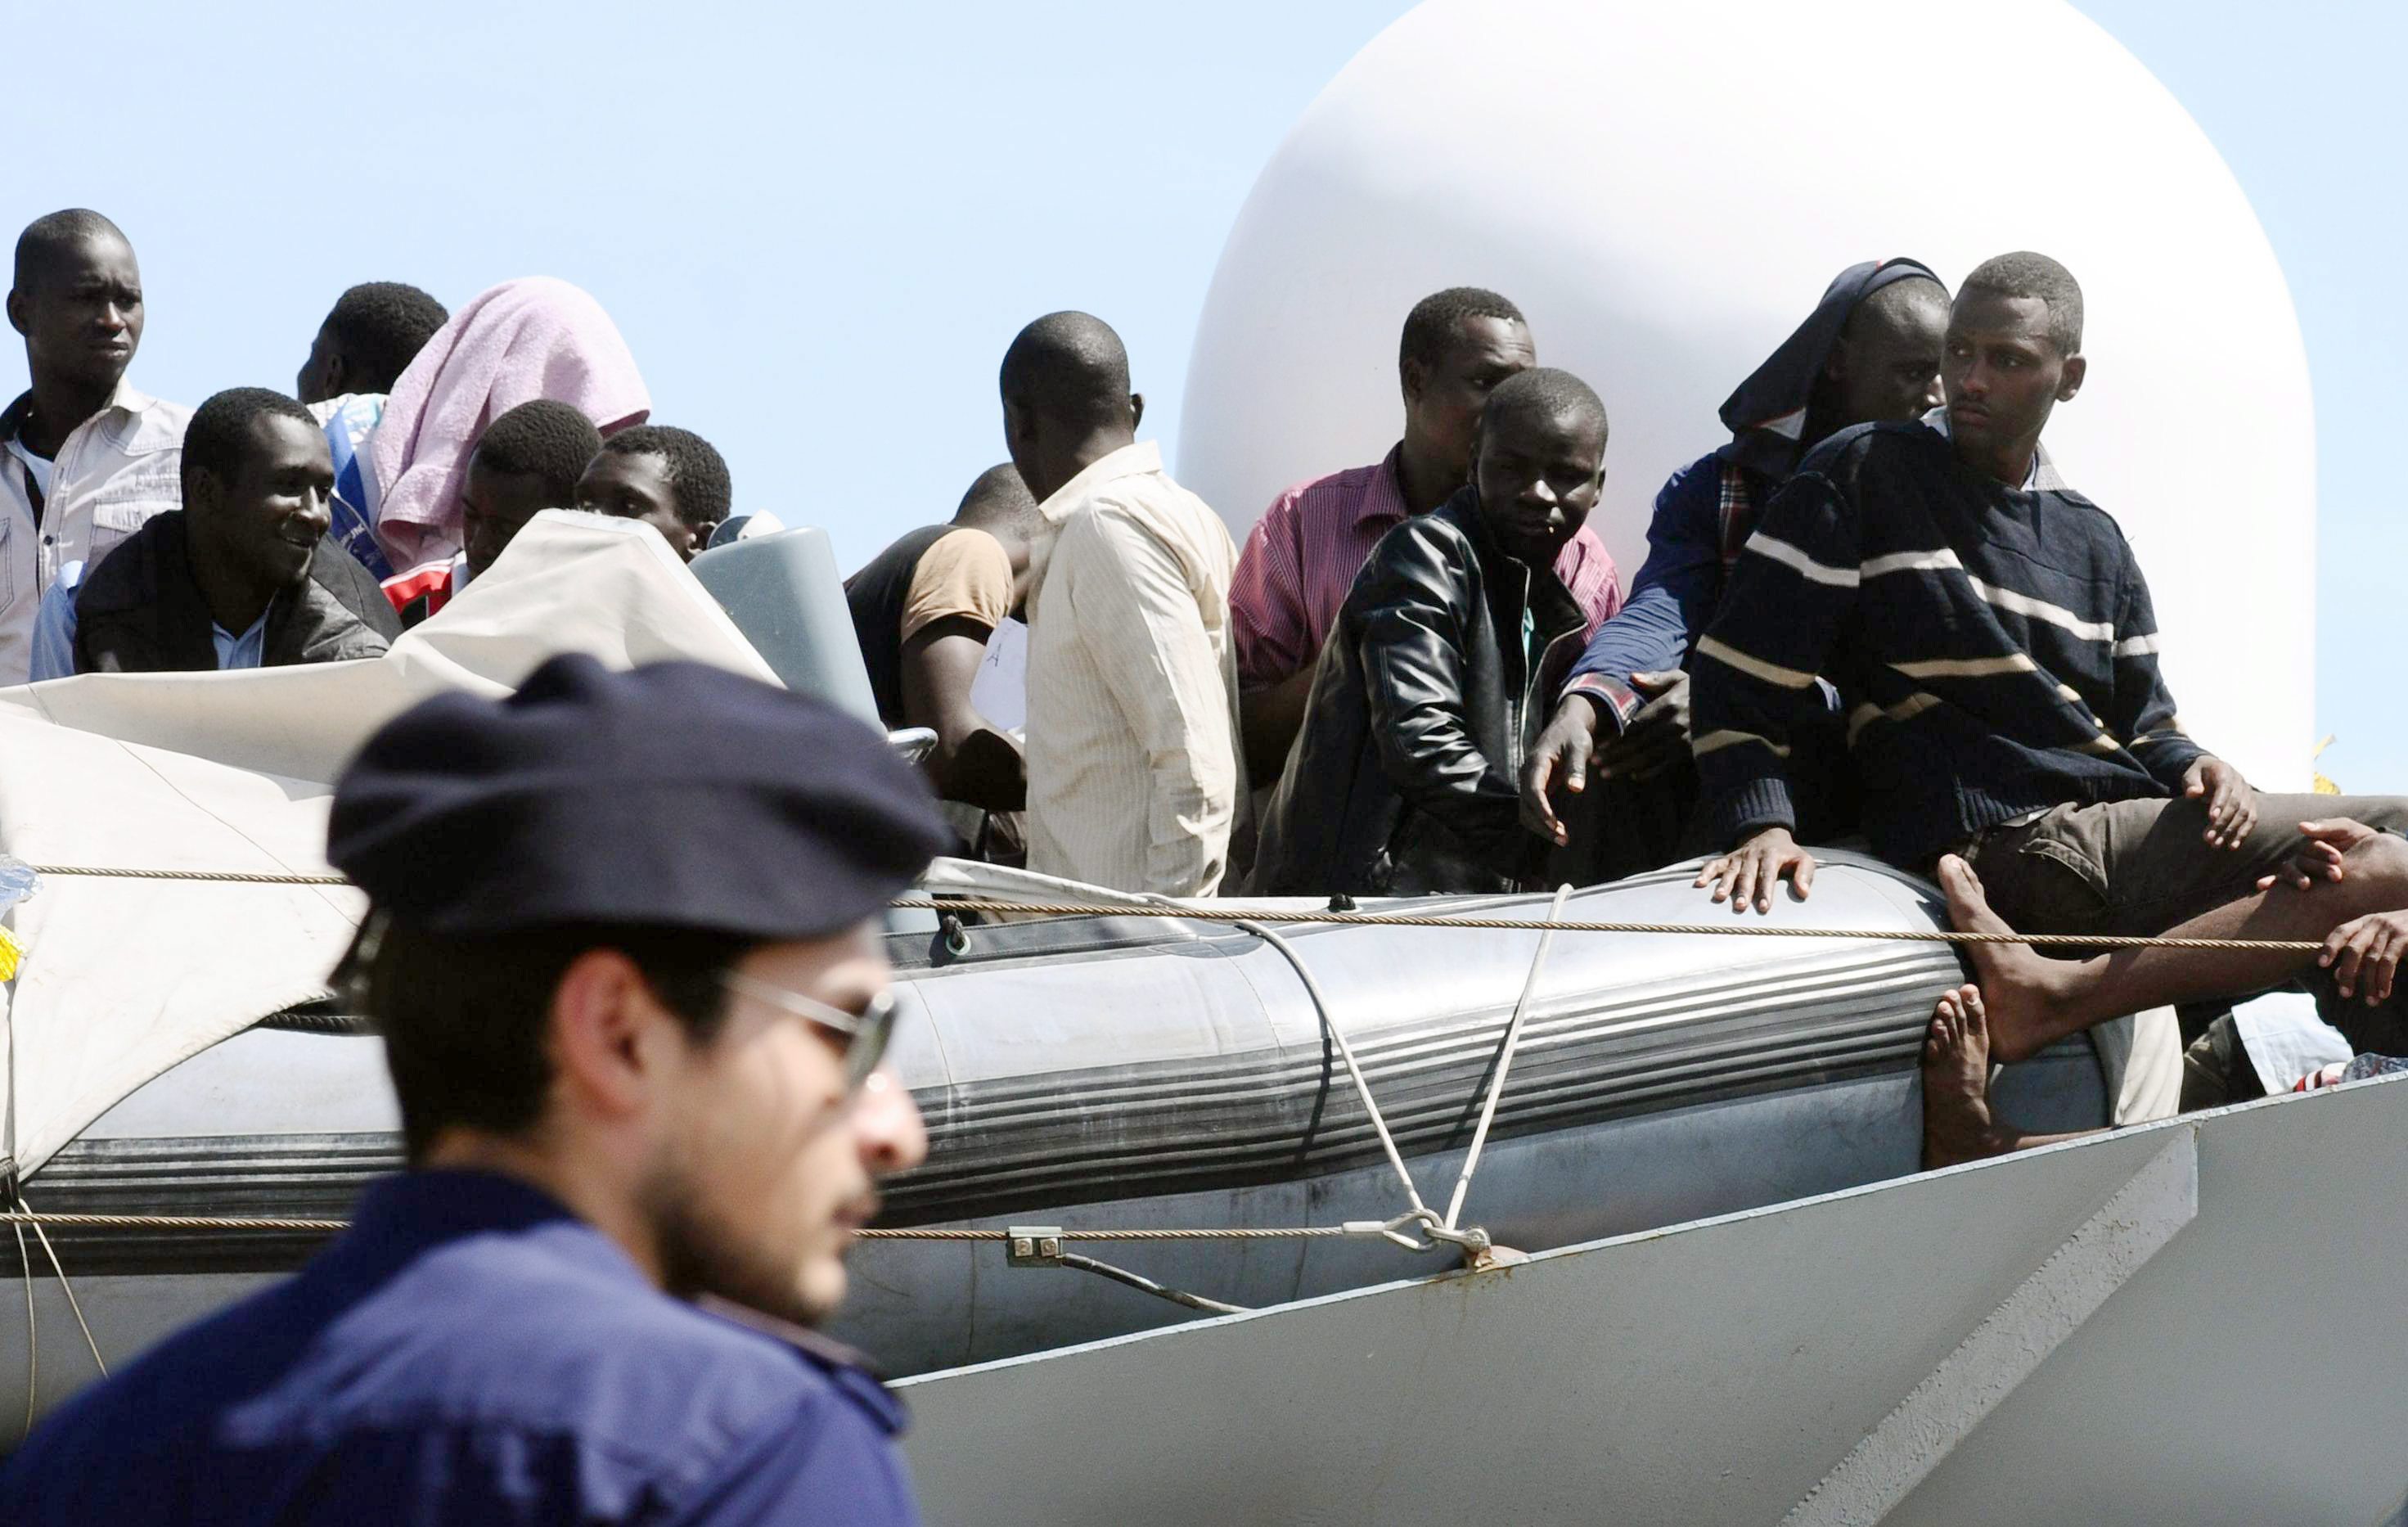 Σικελία: Δέκα νεκρούς μετανάστες περισυνέλεξαν ιταλικά σκάφη